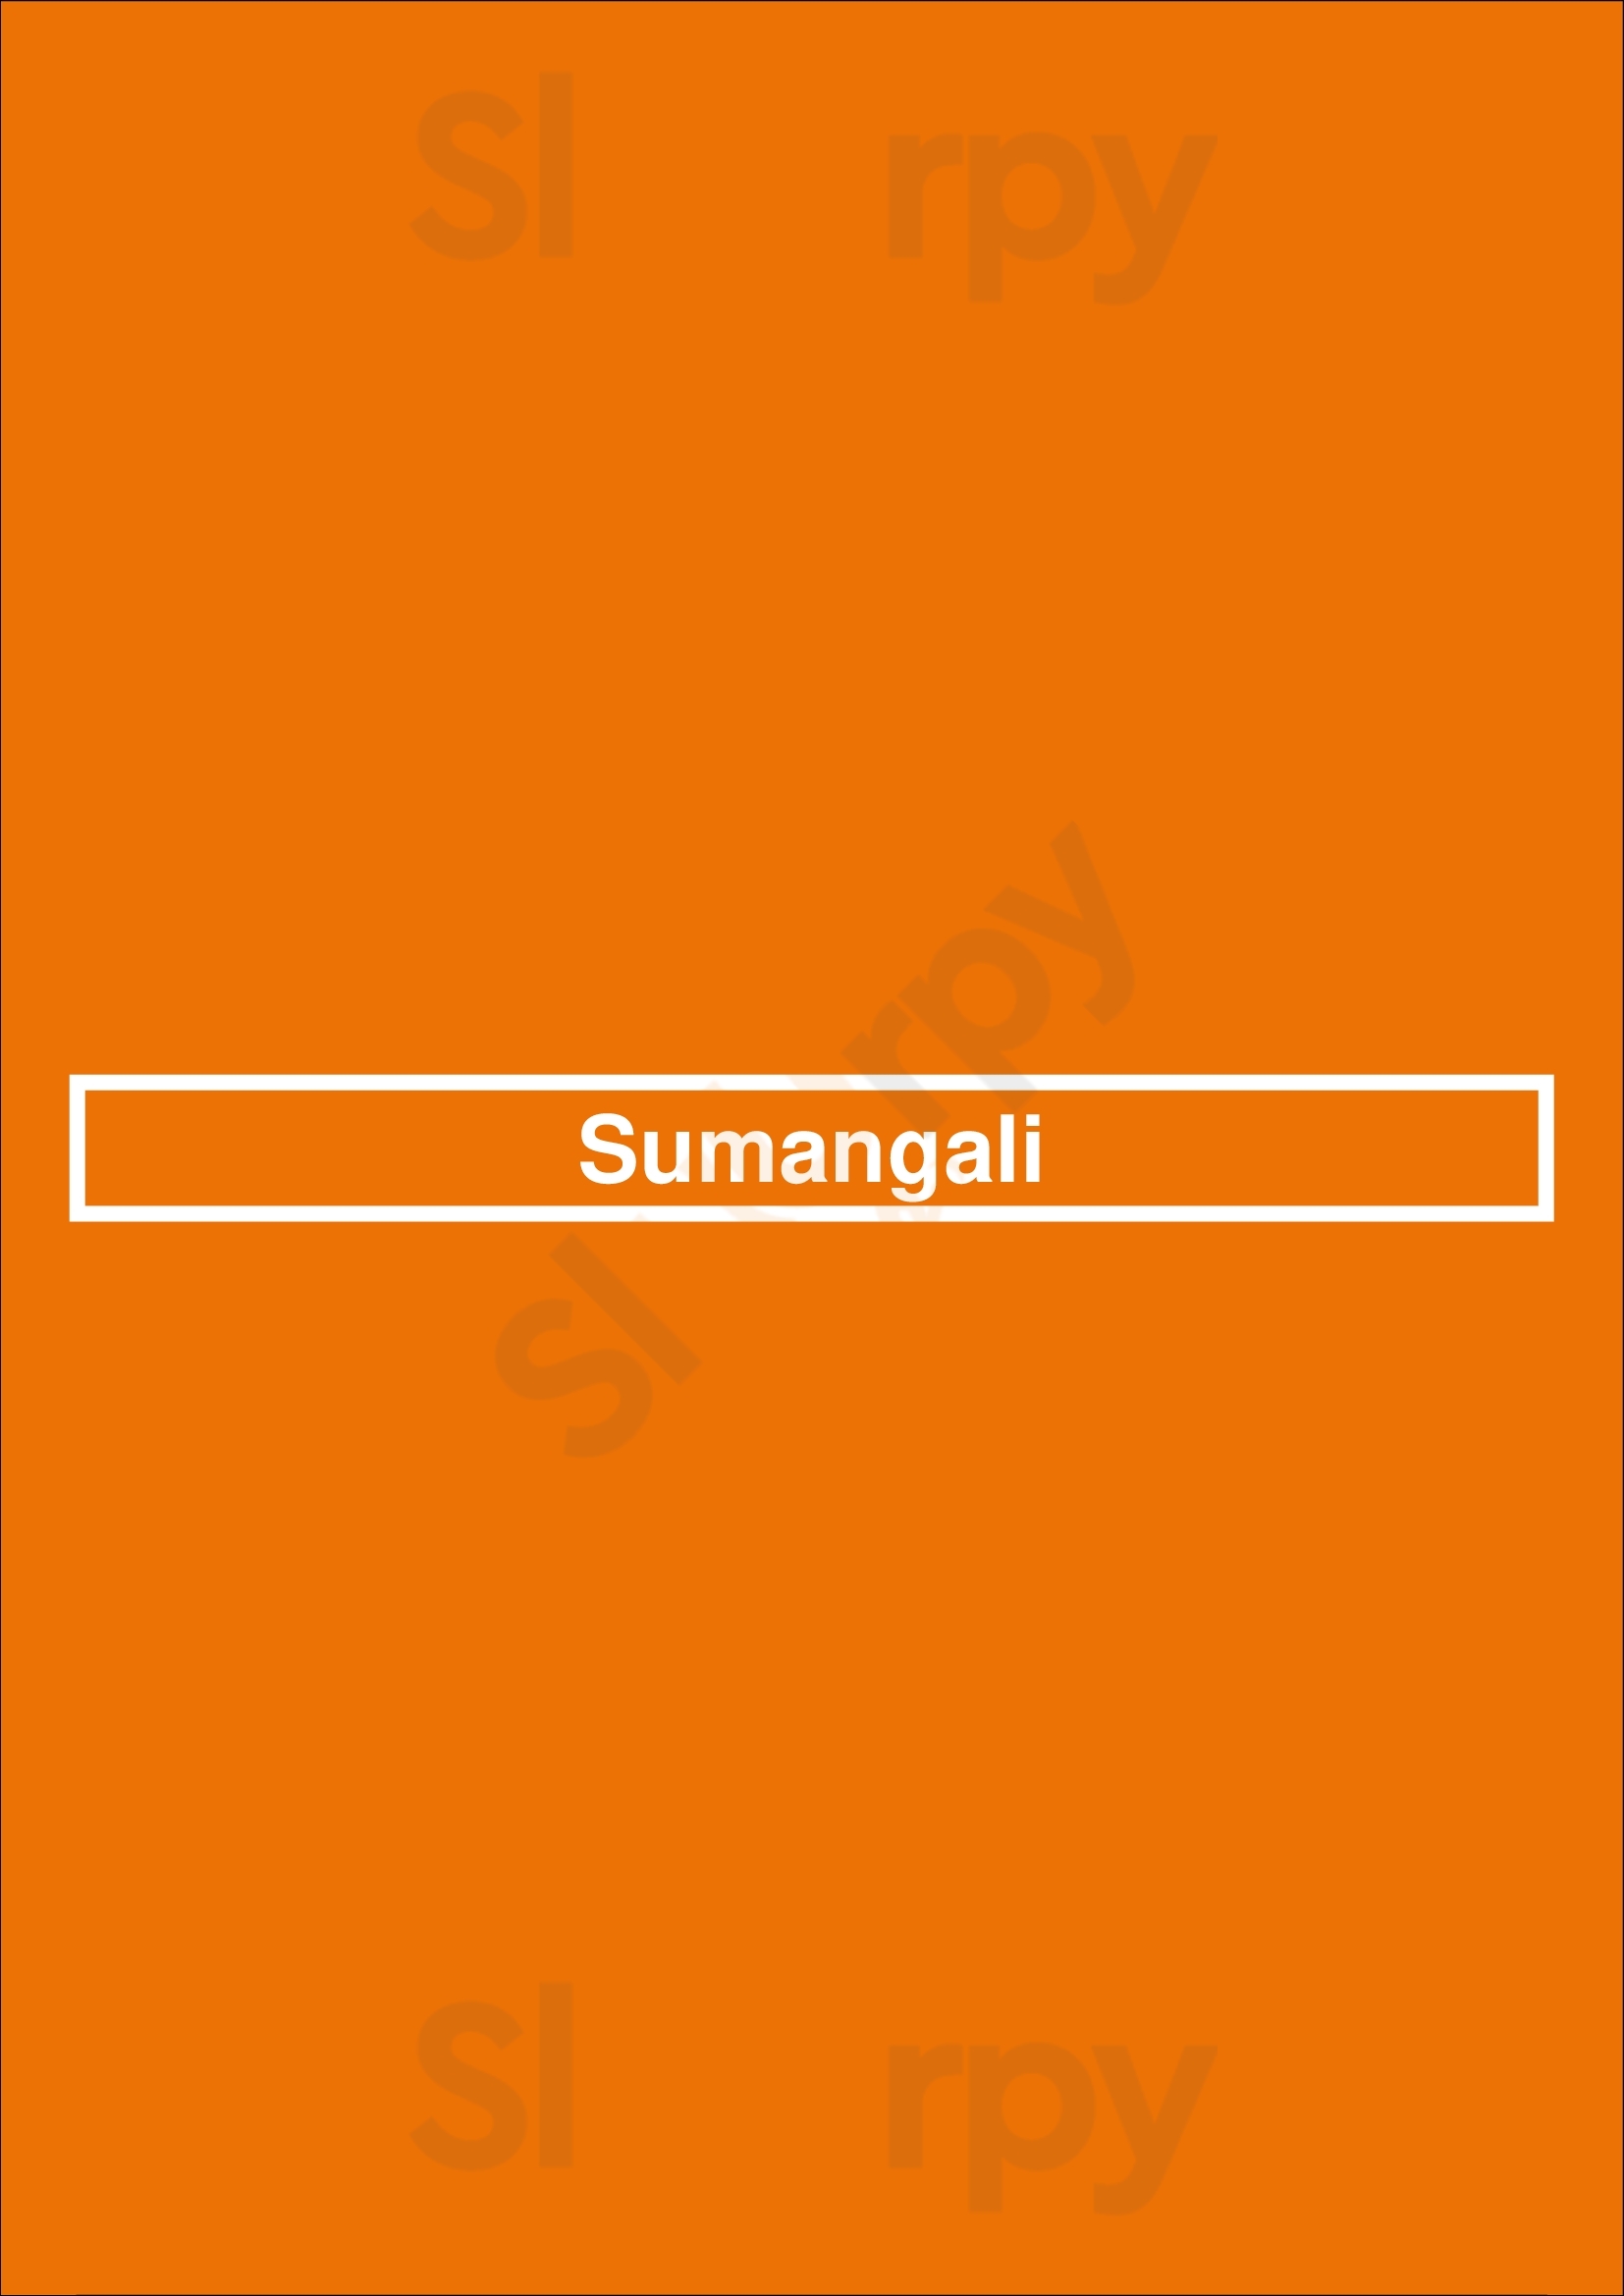 Sumangali Alkmaar Menu - 1